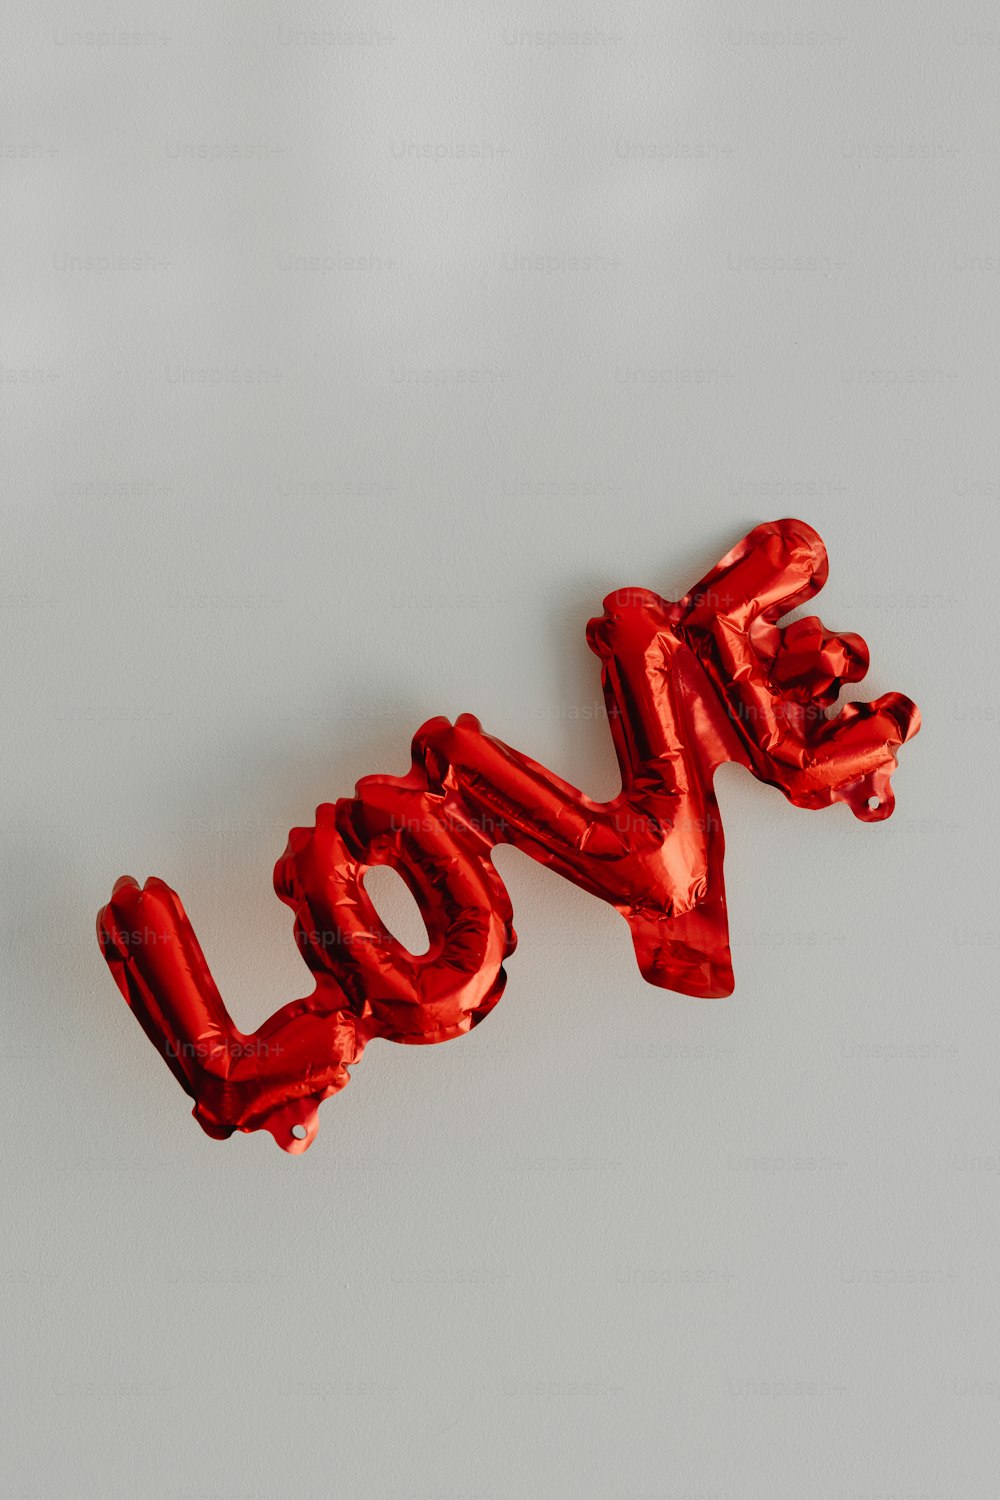 La palabra amor deletreada de globos de aluminio rojo